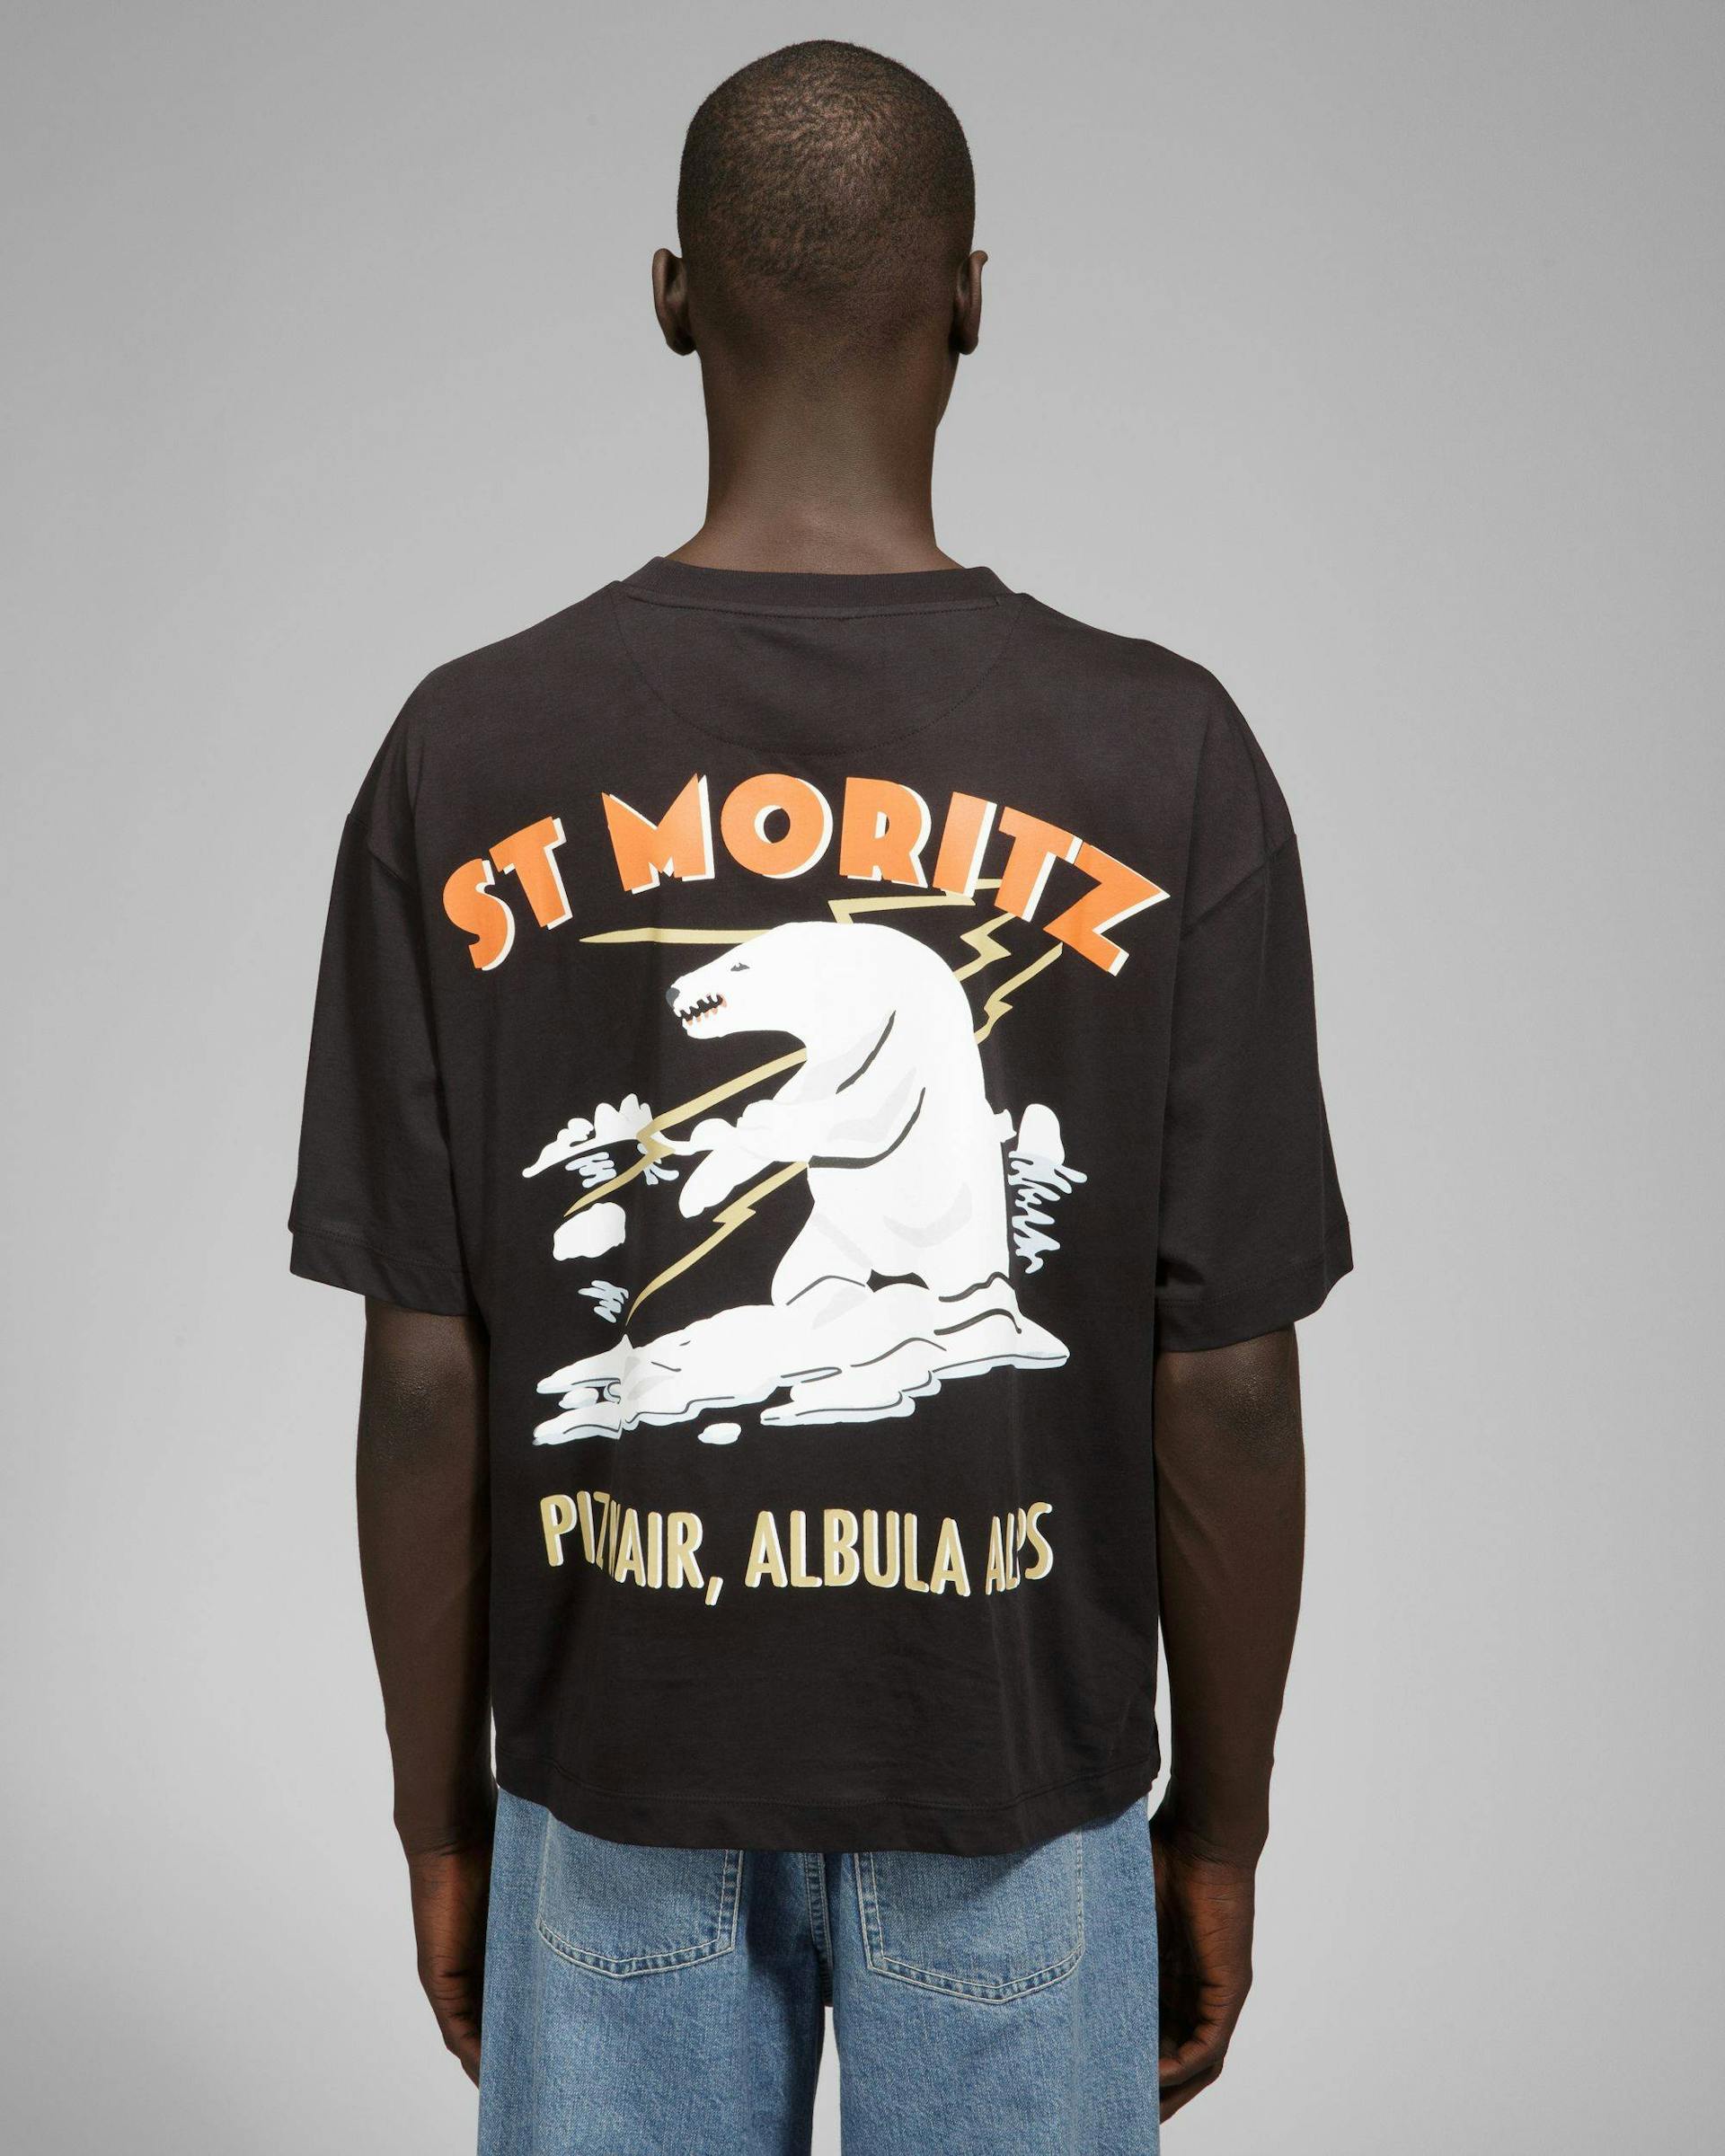 St Moritz Cotton T-Shirt In Black - Men's - Bally - 08